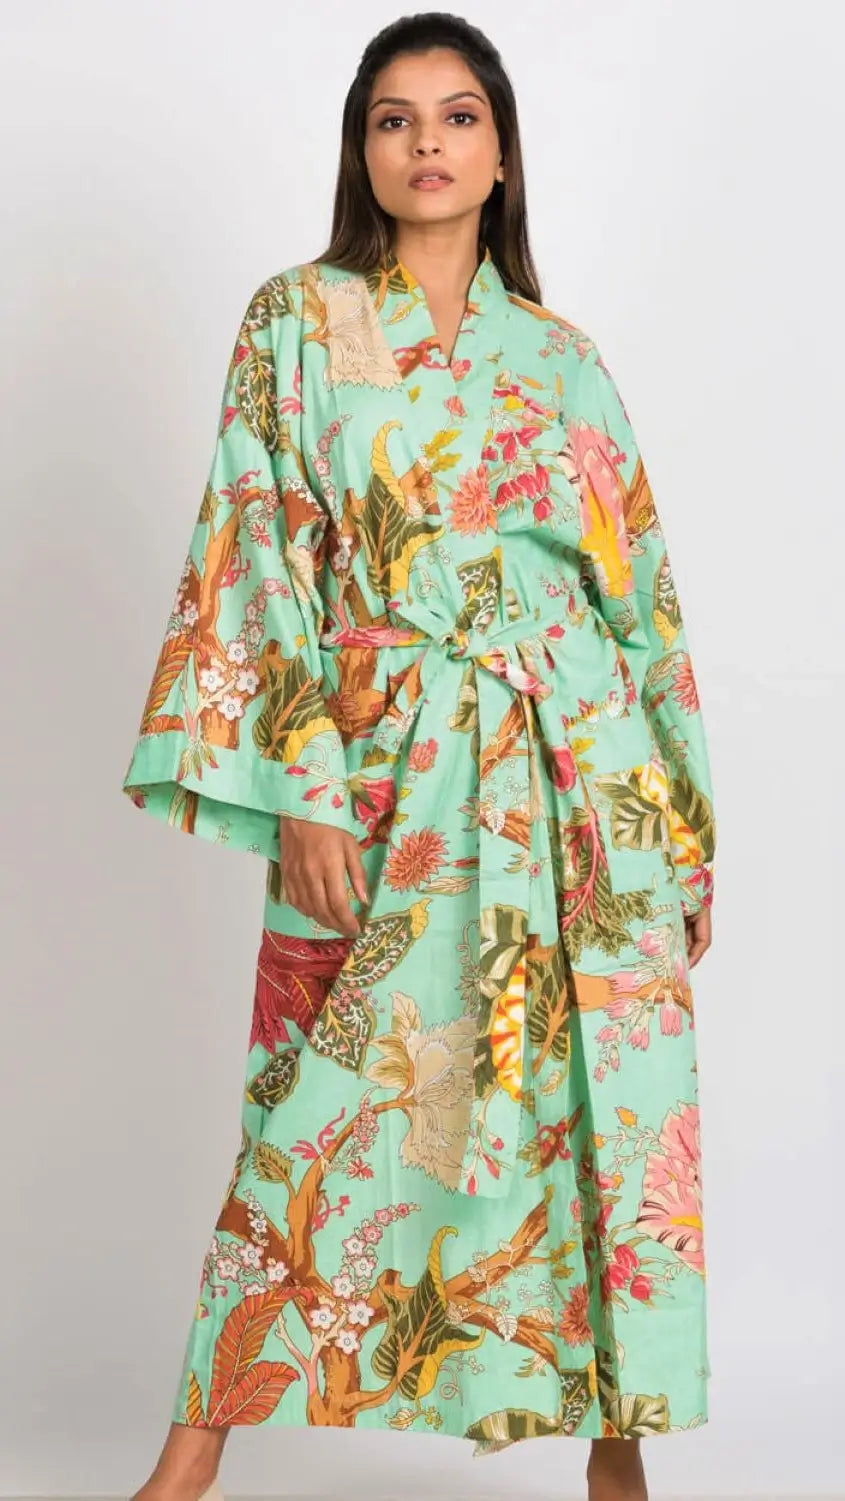 Cotton Kimono Robe in Seafoam Green Floral 